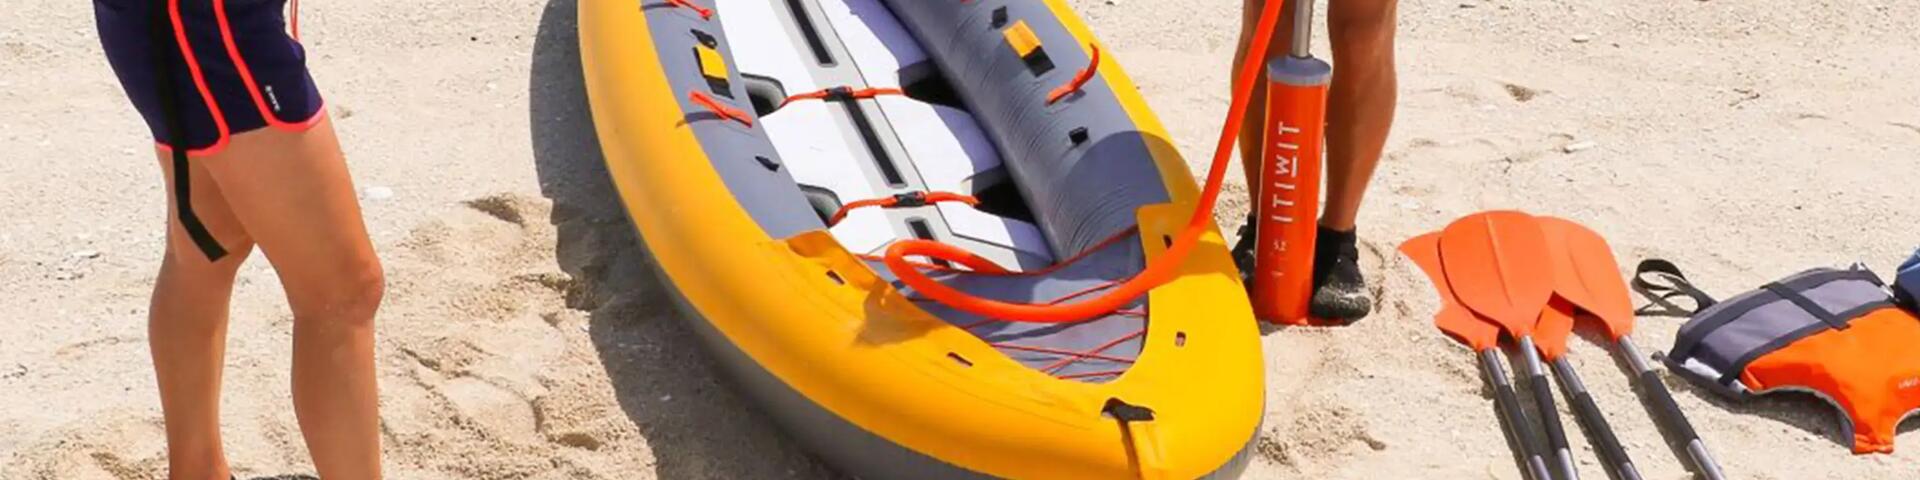 pompe kayak gonflable